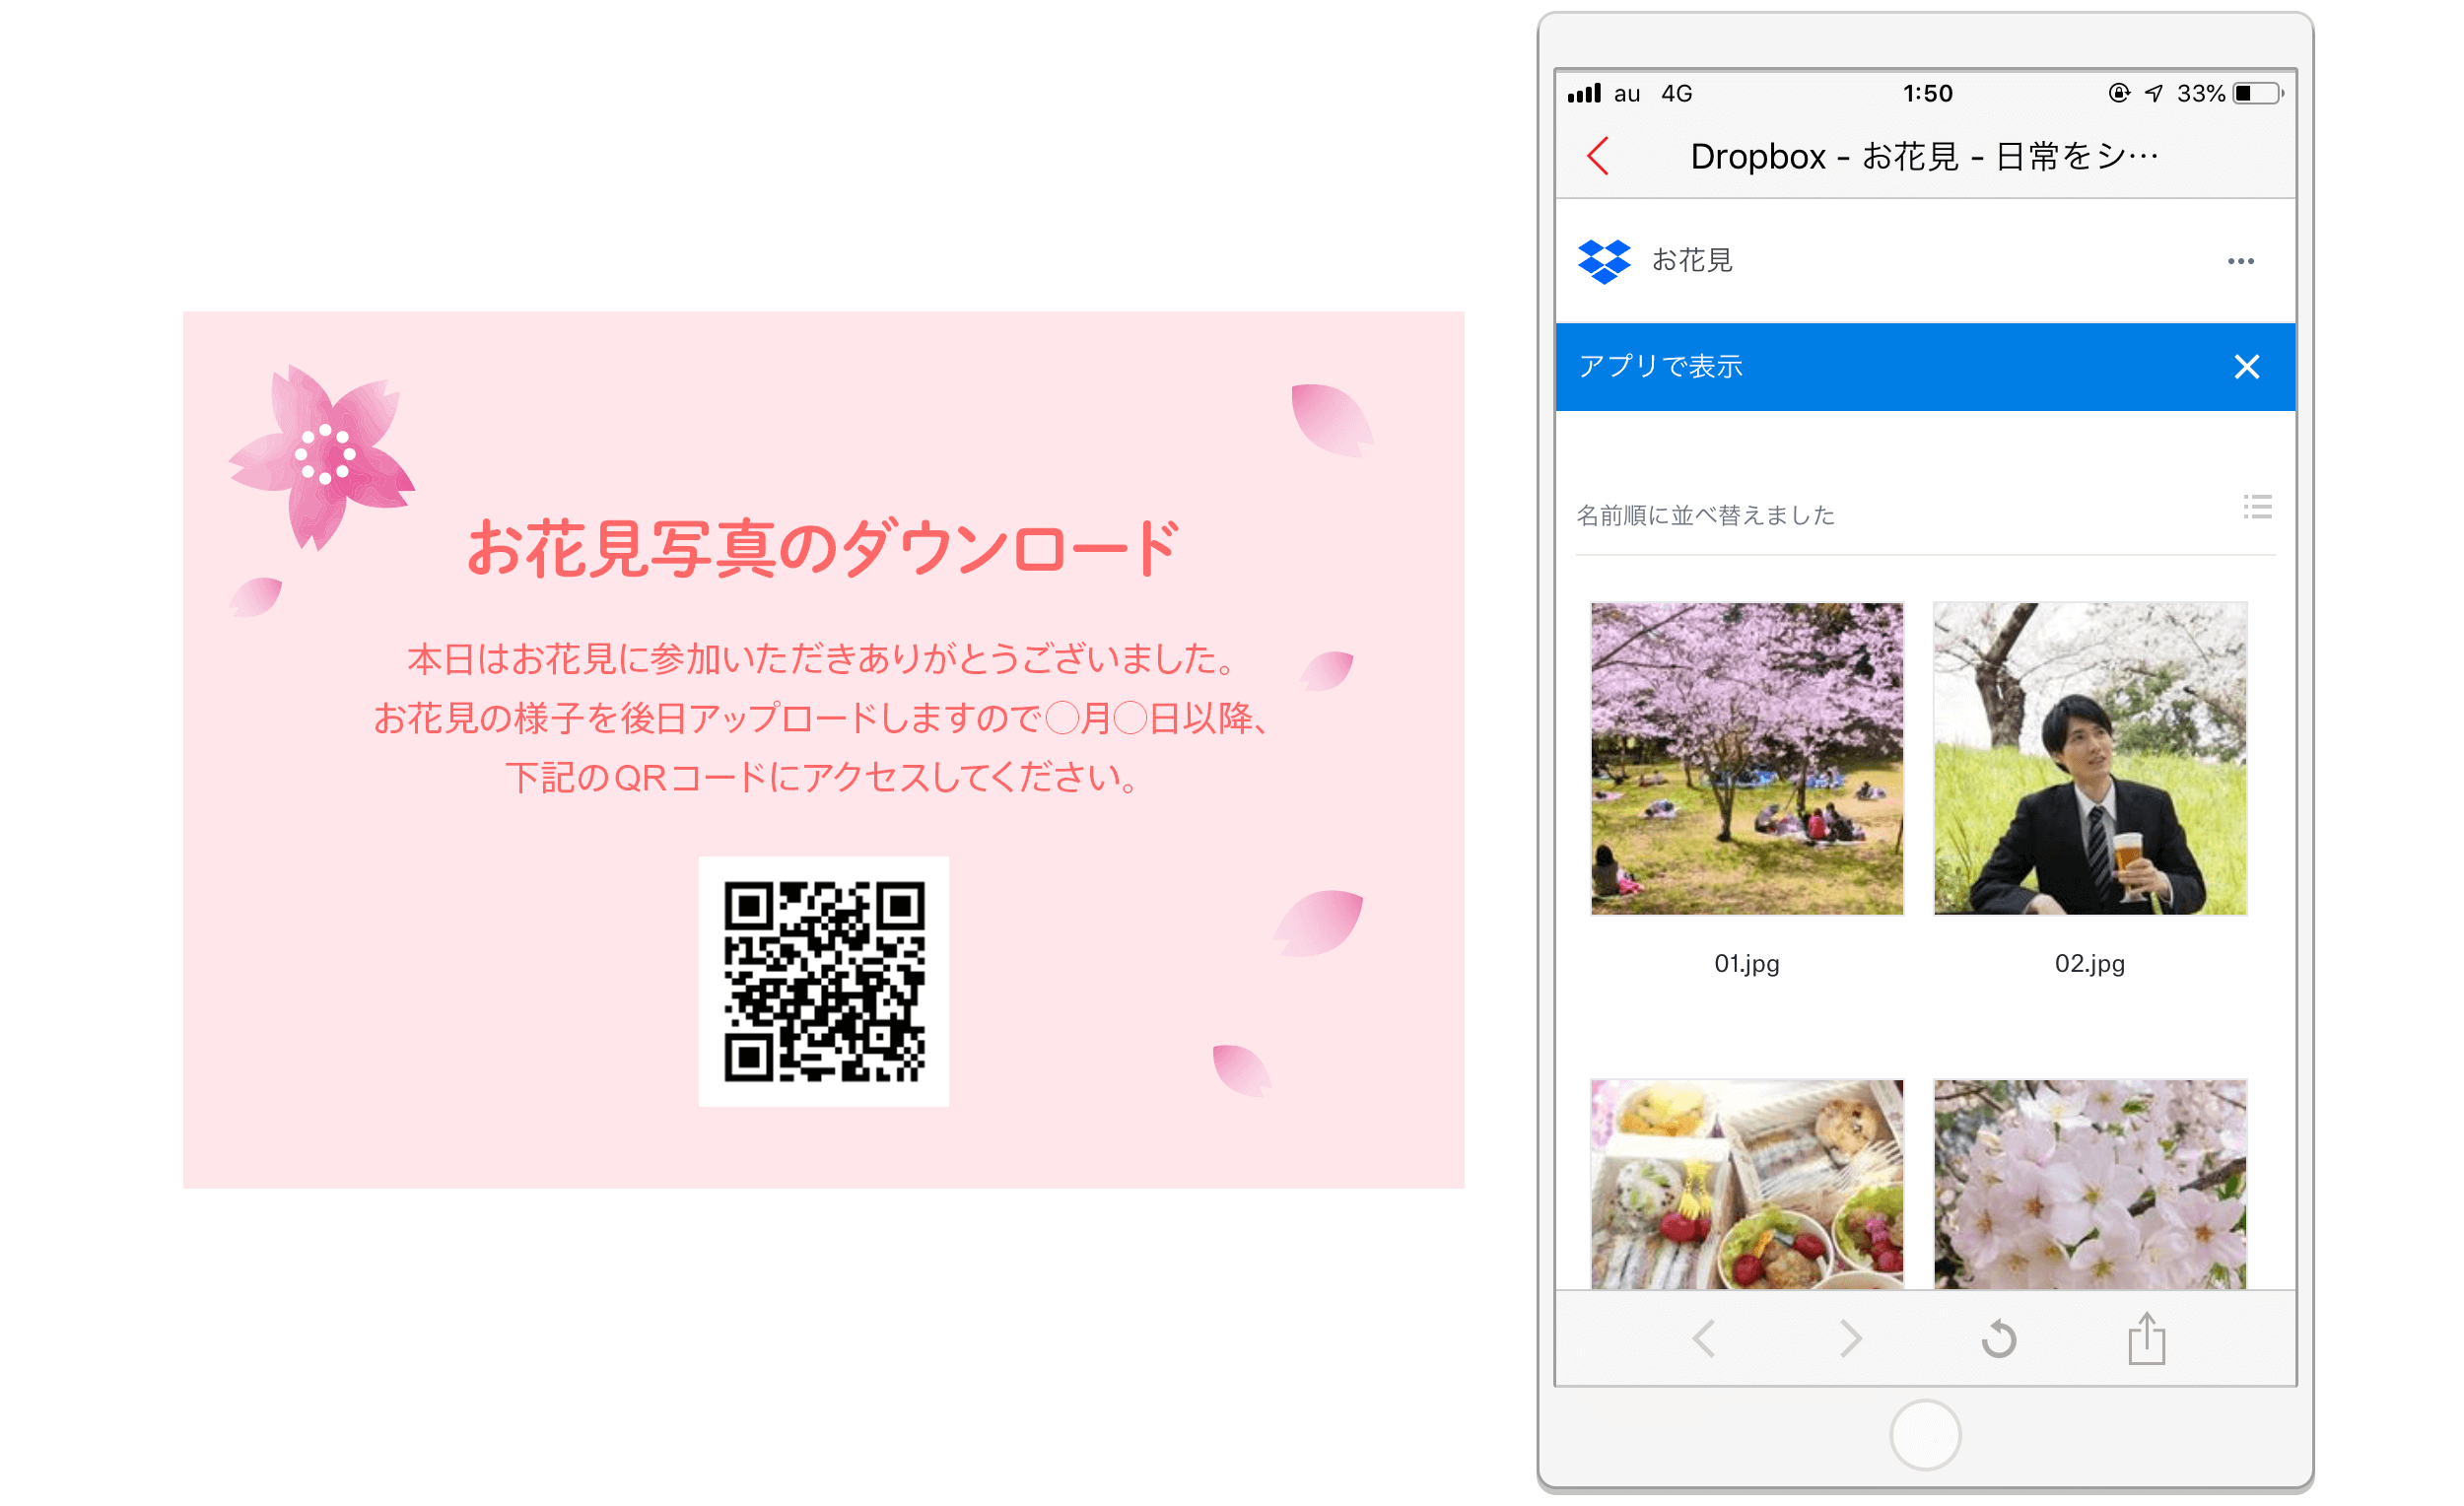 お花見写真のダウンロード用カードイメージとQRコードの読み取りイメージ